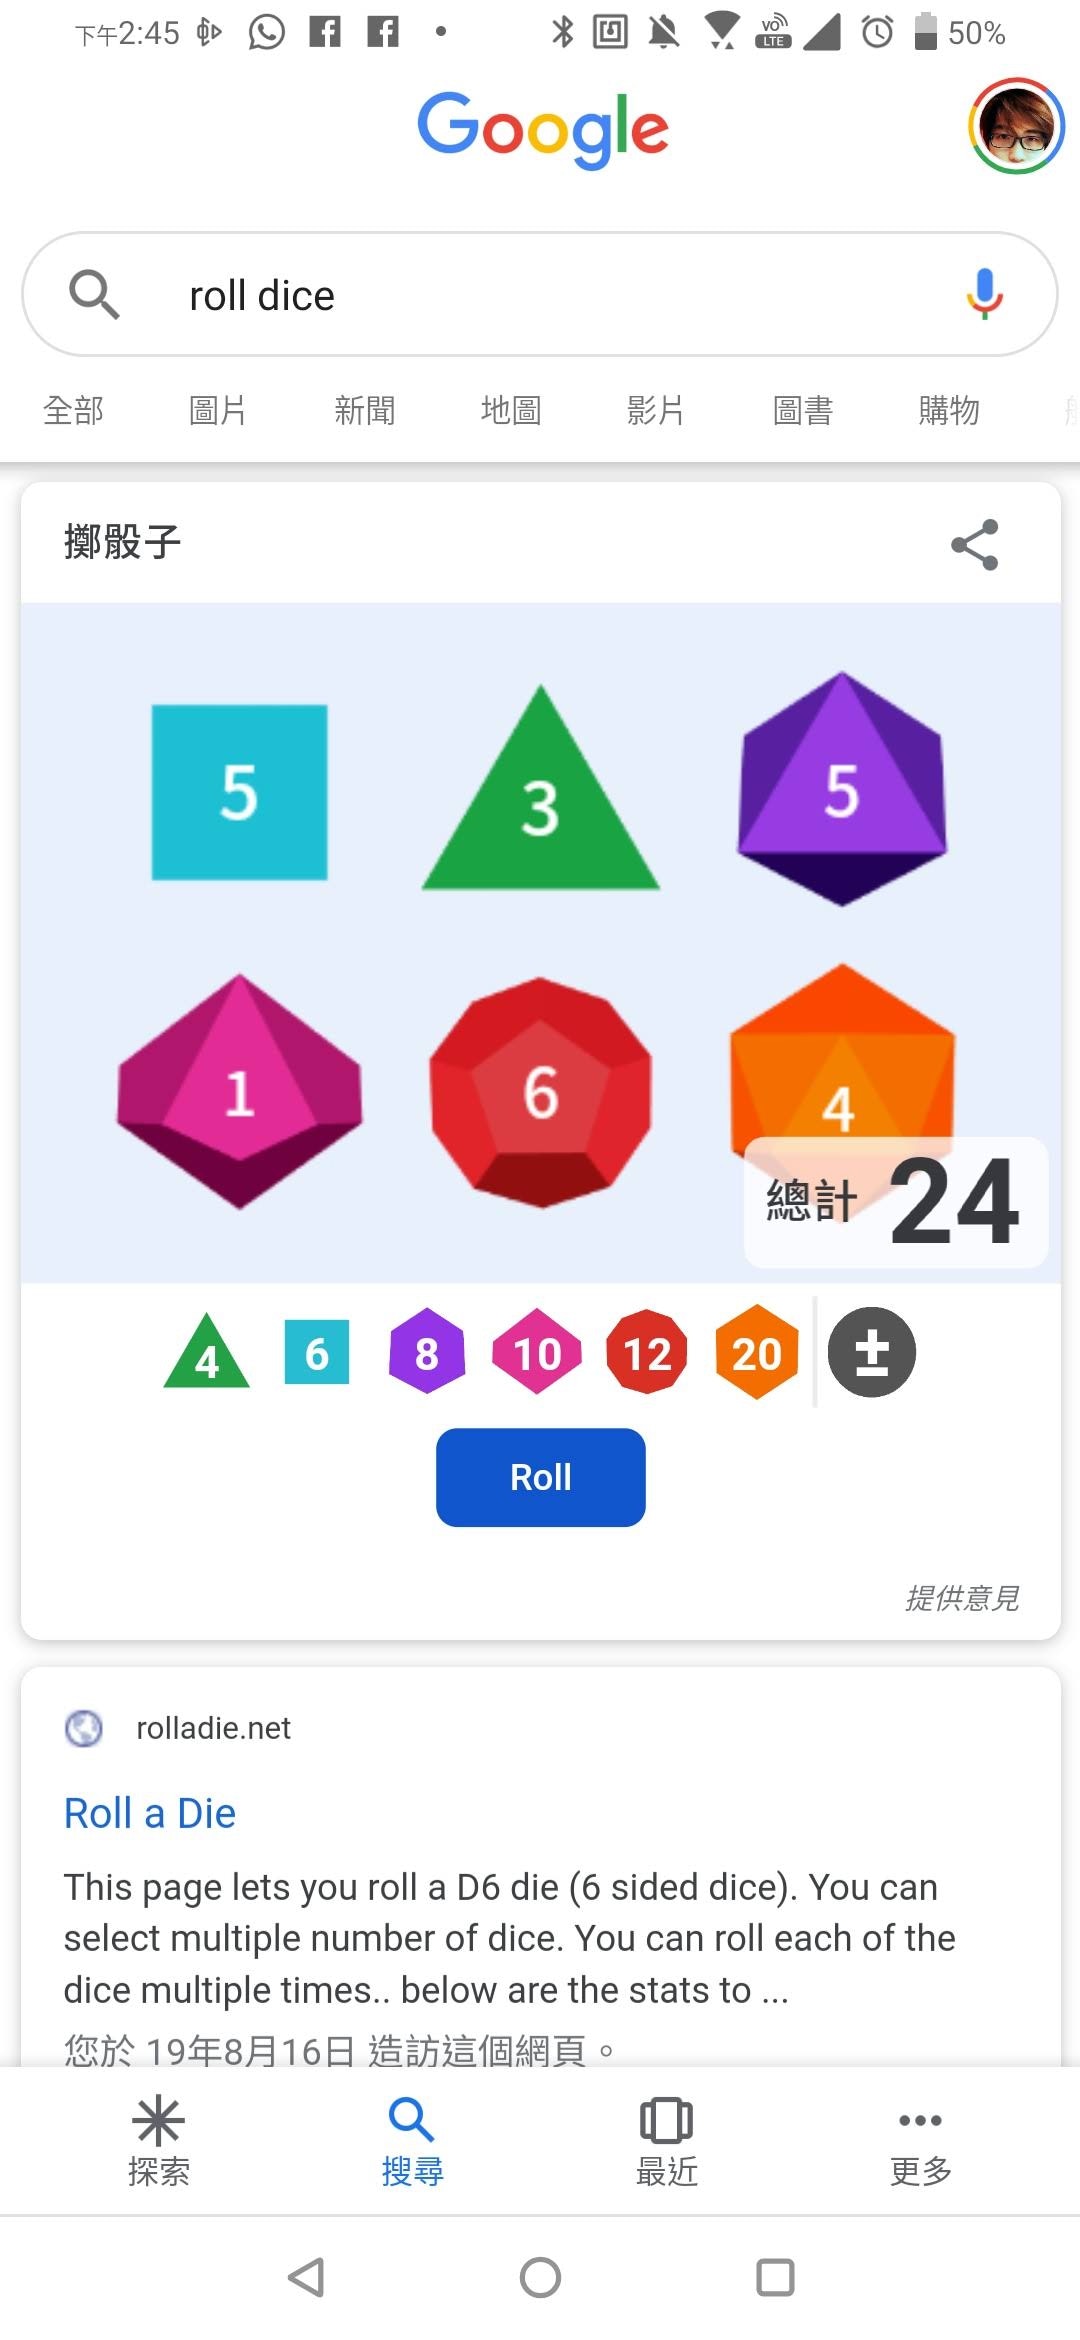 總共有 6 種面數骰子，除最常見的 6 面骰，還有 4、8、10、12、20 面的骰子選擇